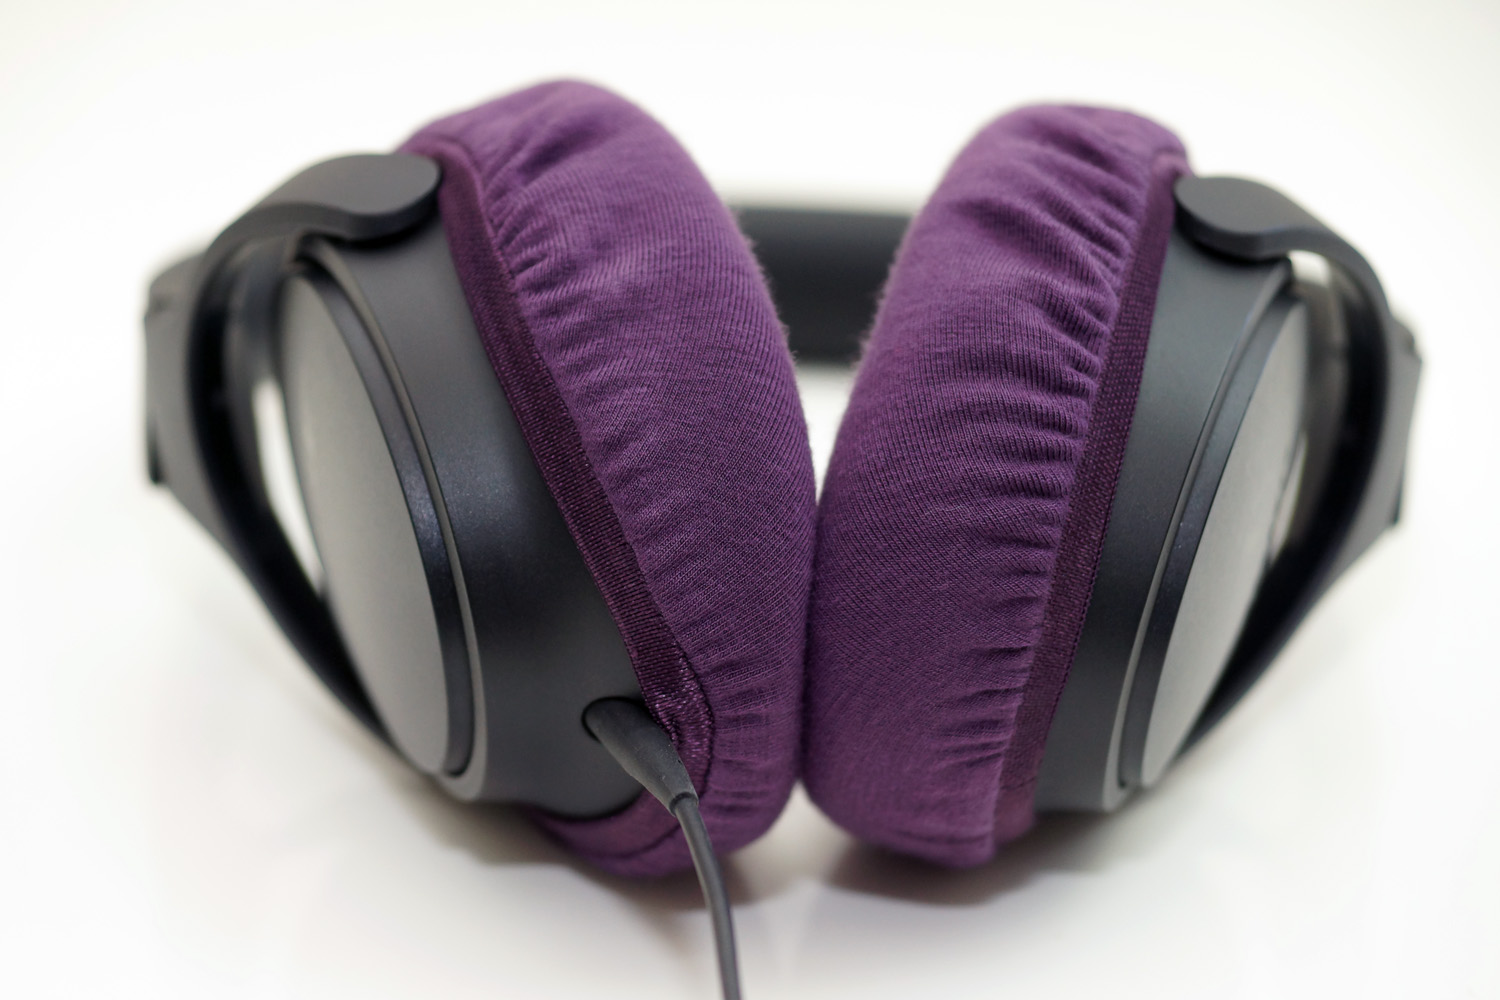 Bose SoundTrue around-ear headphones II のイヤーパッド与mimimamo兼容 
